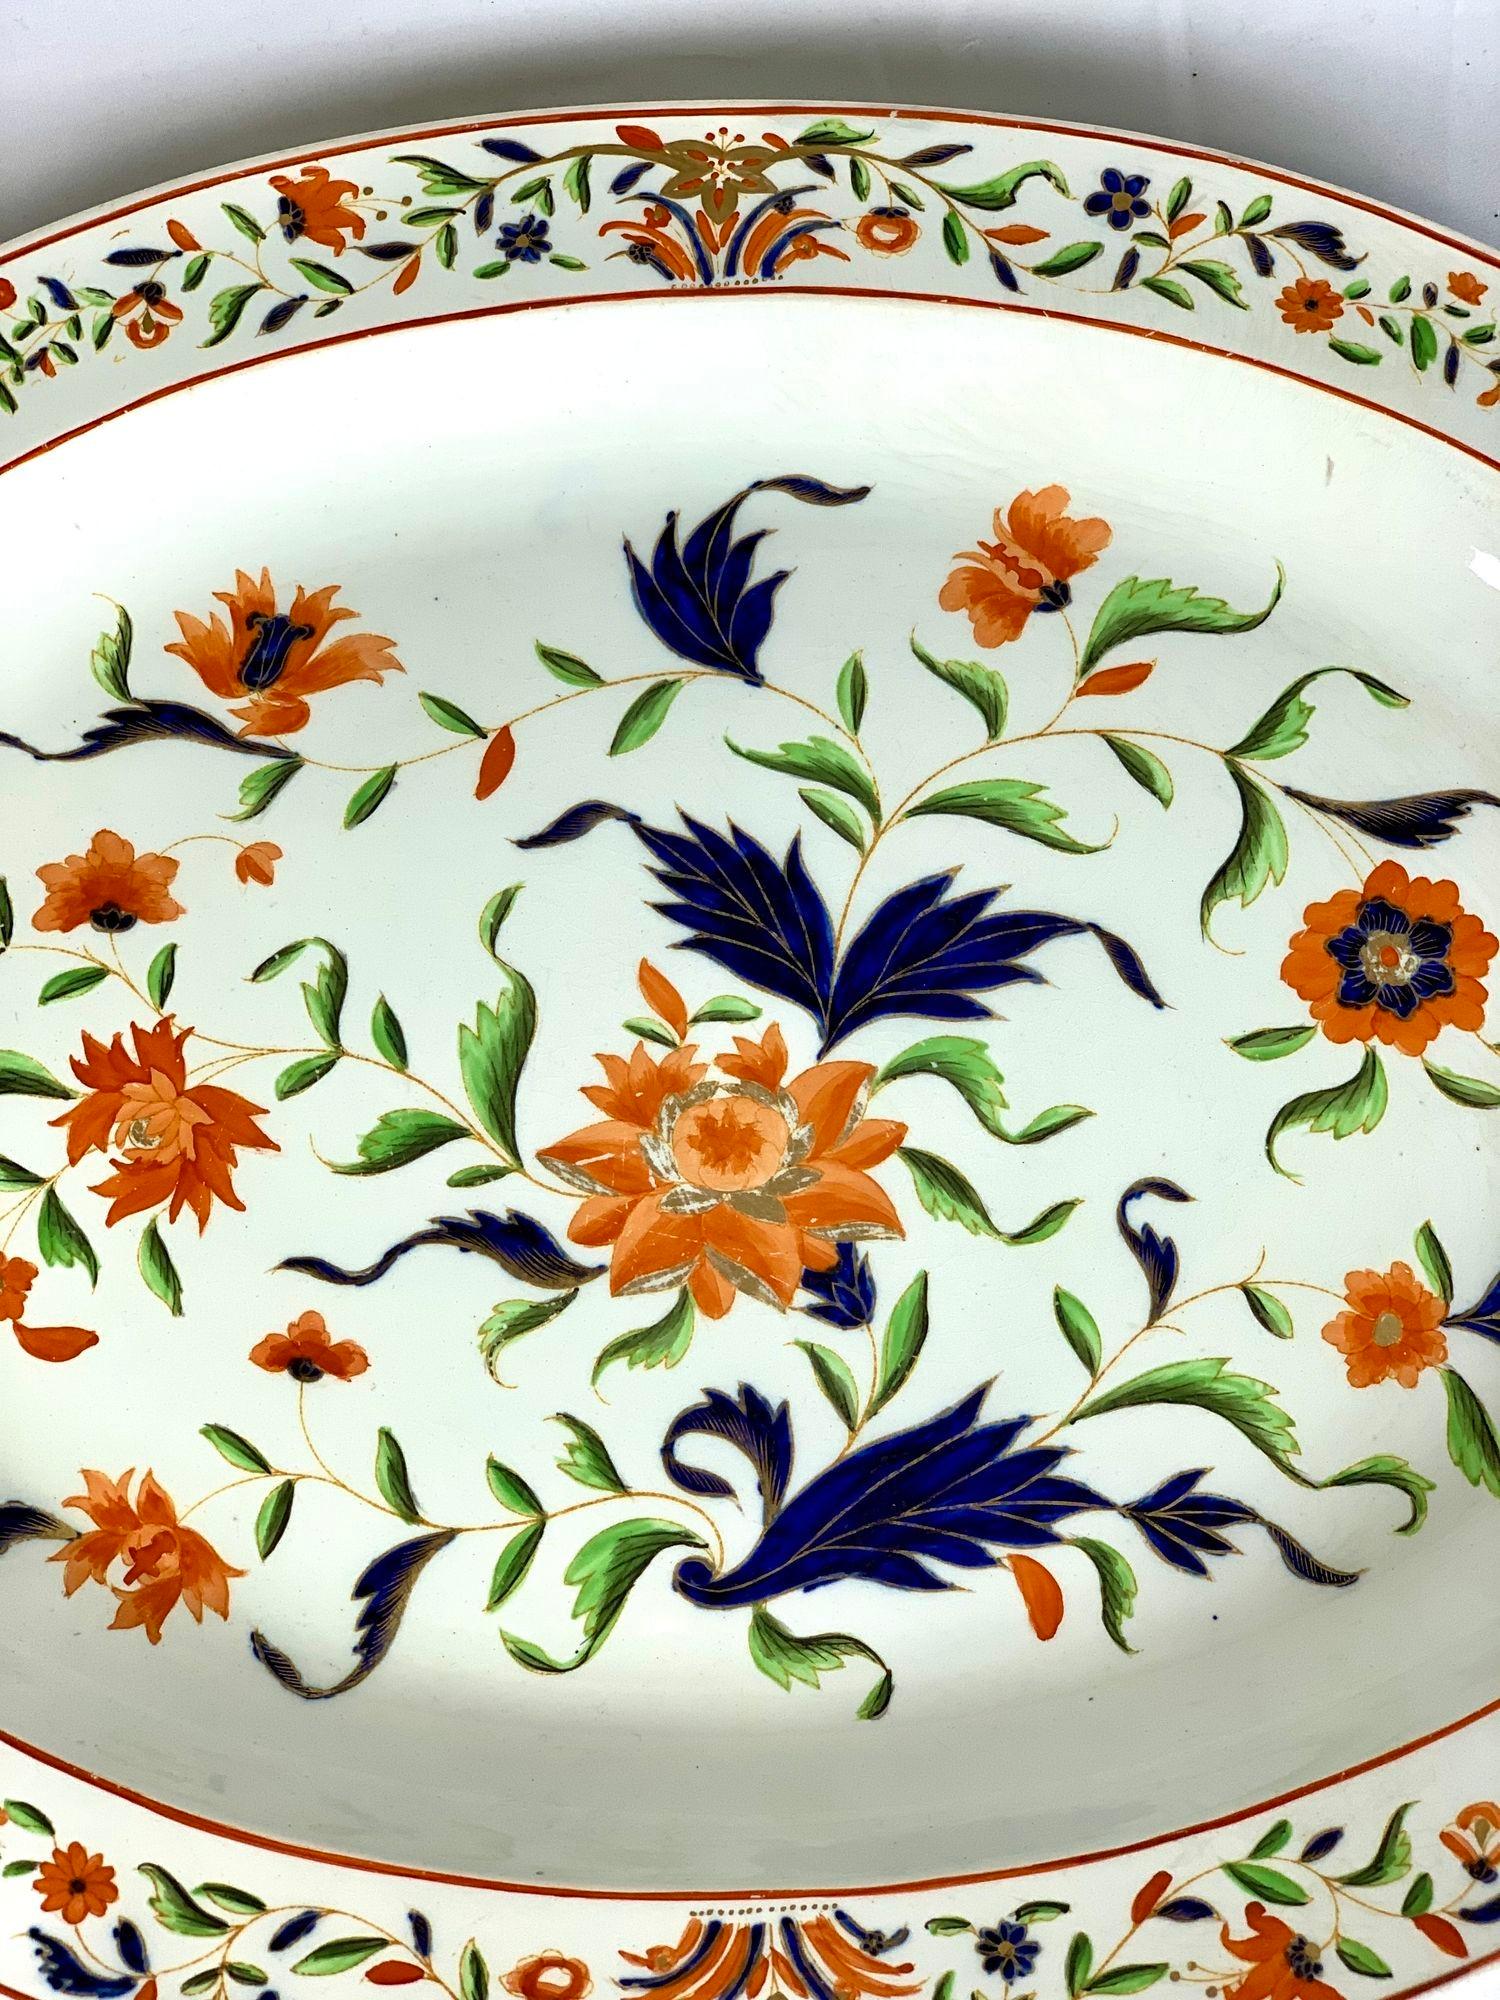 Un grand et beau plat Wedgwood décoré avec les couleurs Imari d'orange et de bleu profond avec des accents de vert clair et de dorure.
La décoration colorée représente des brins de feuilles et de fleurs.
Le bord est décoré d'une bande de feuilles et